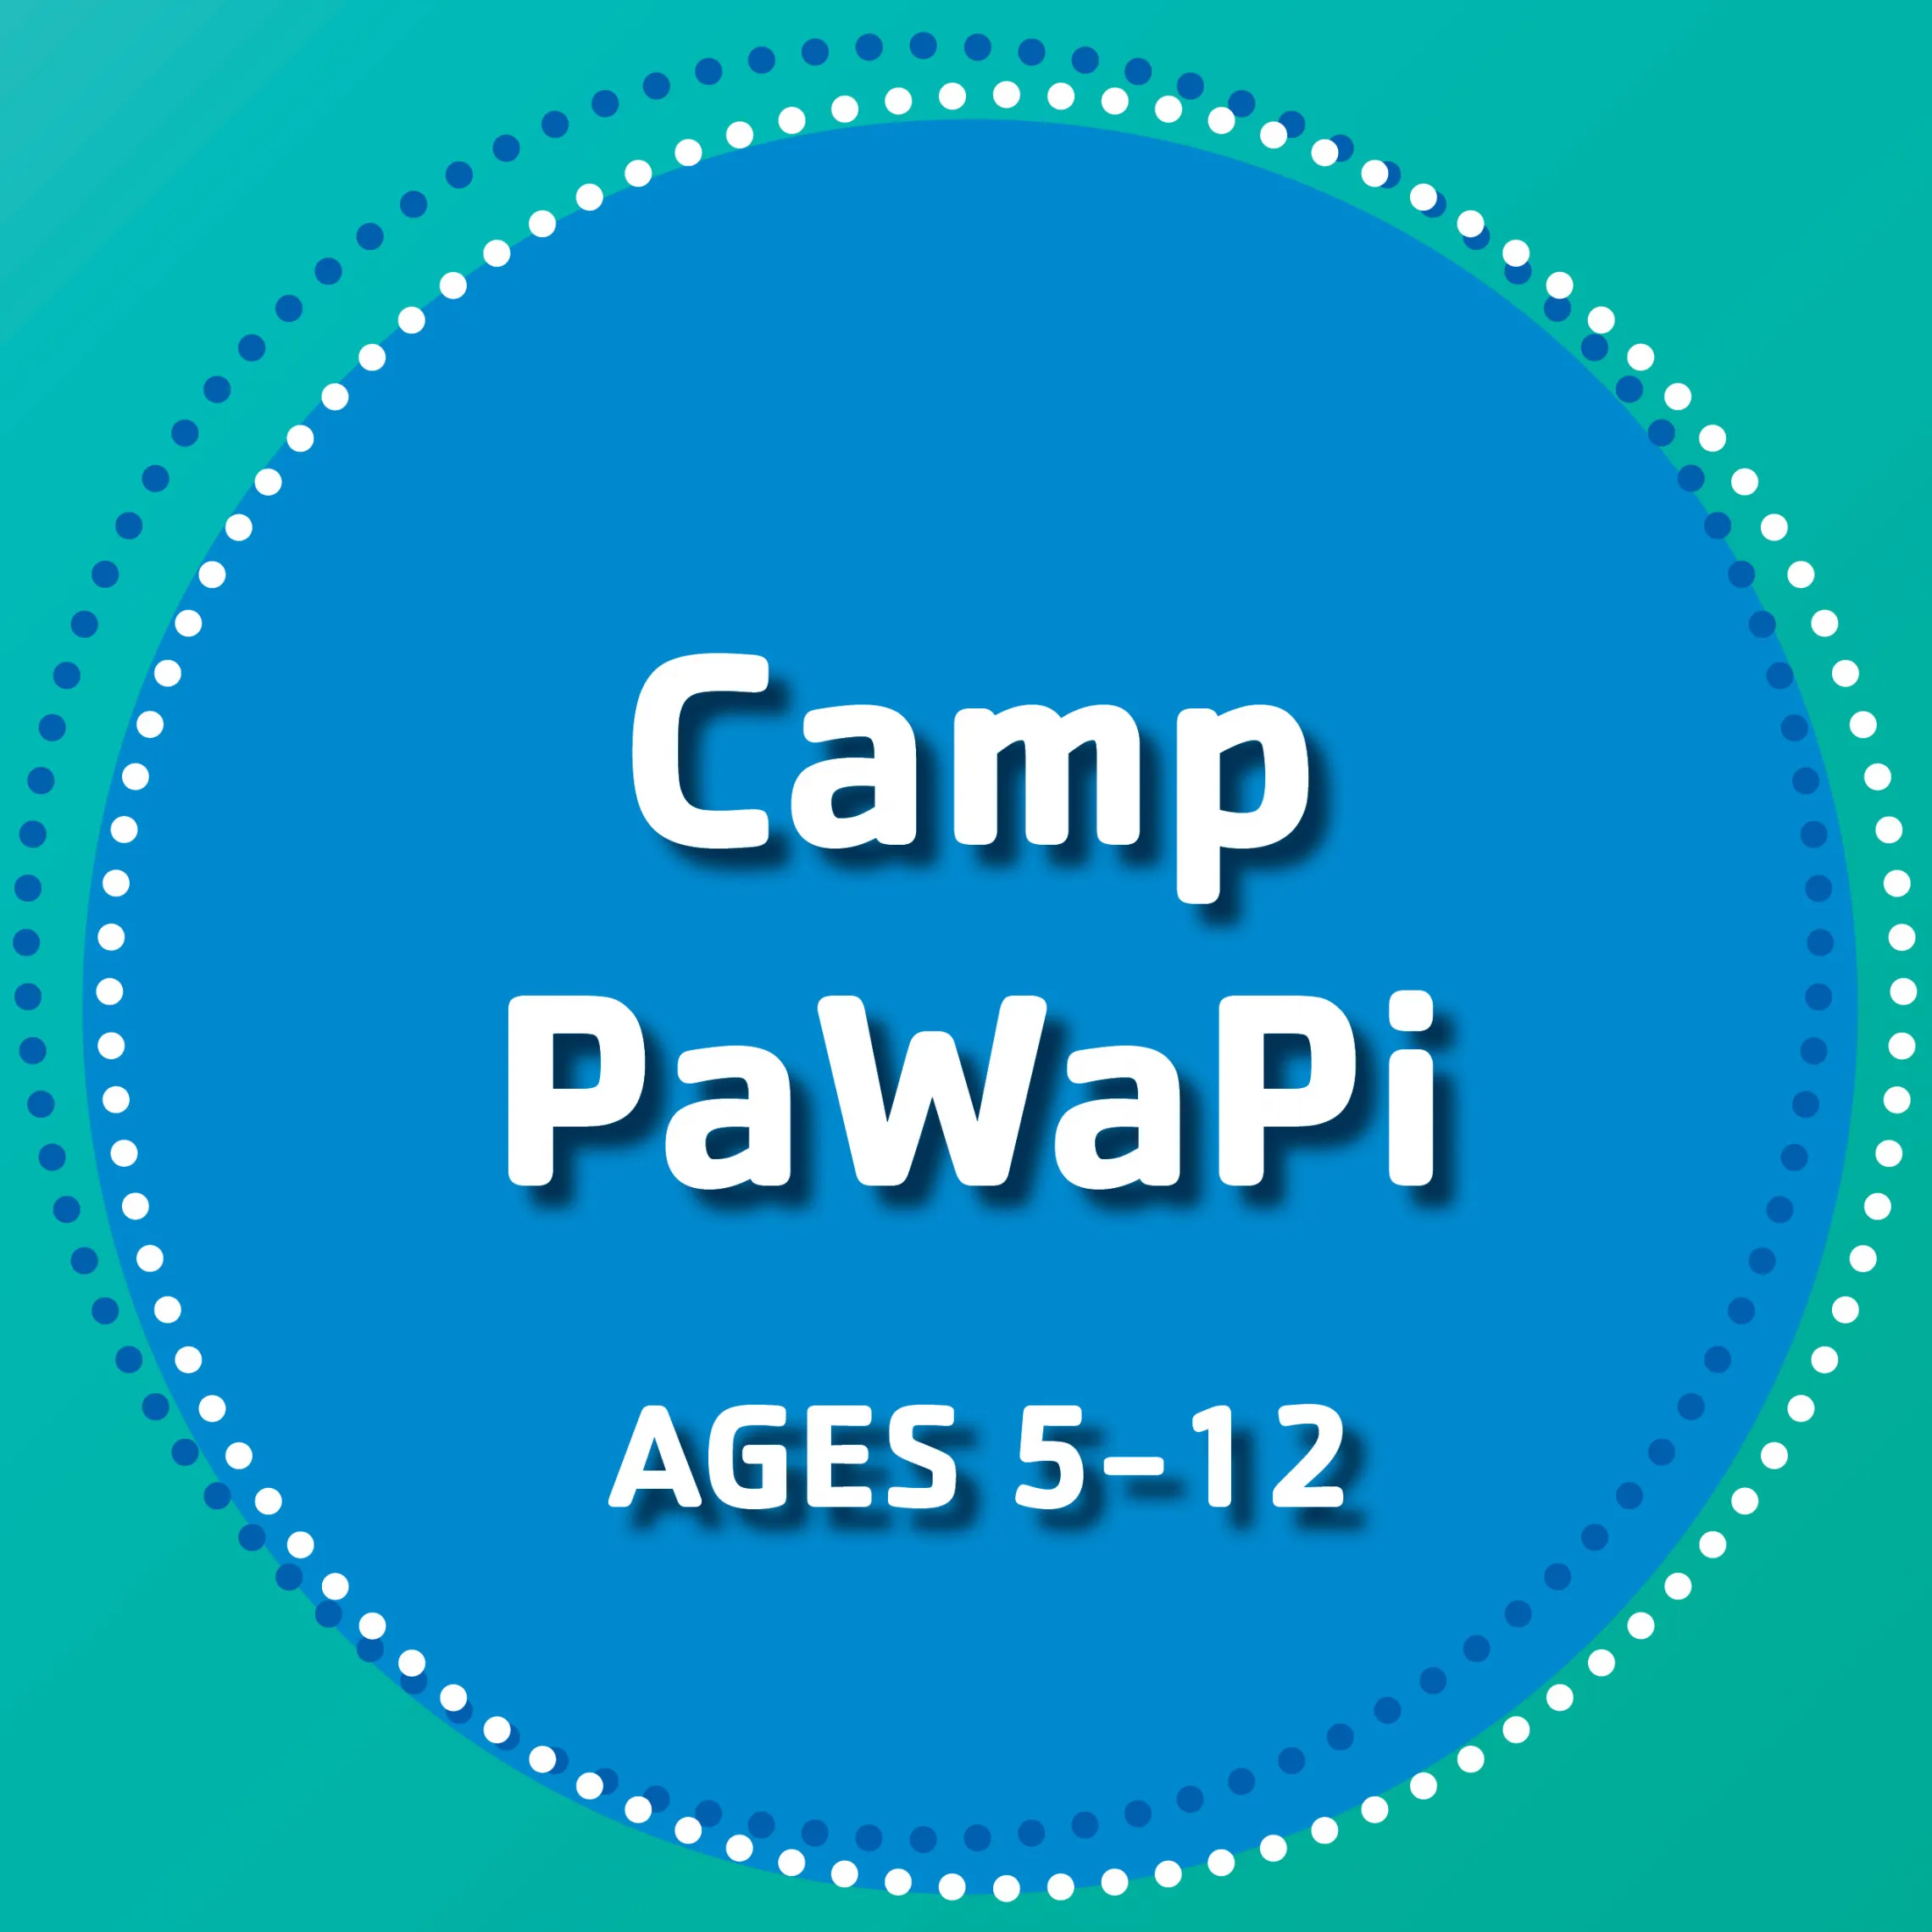 Camp Pawapi